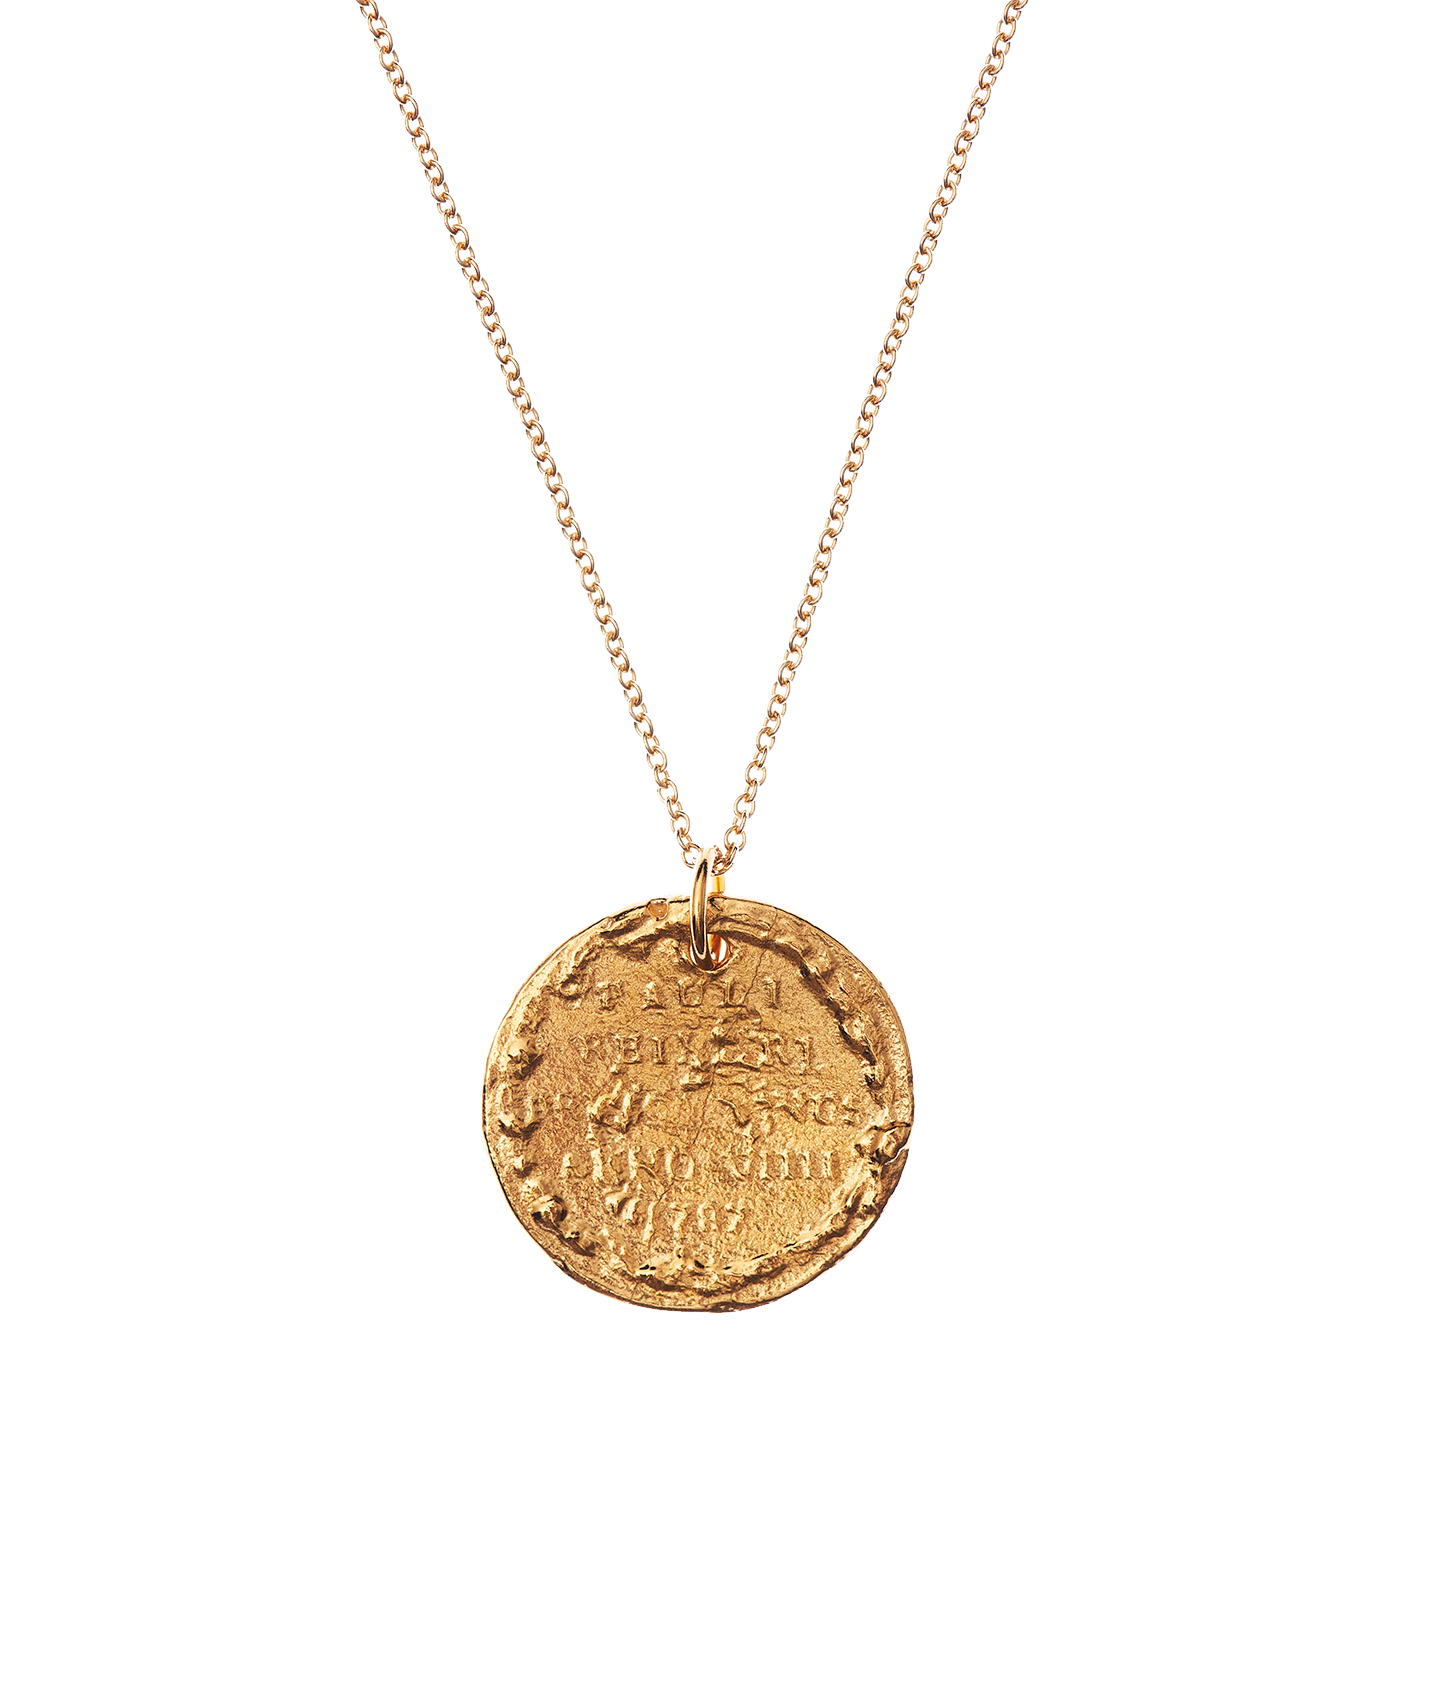 Medium Leone Necklace